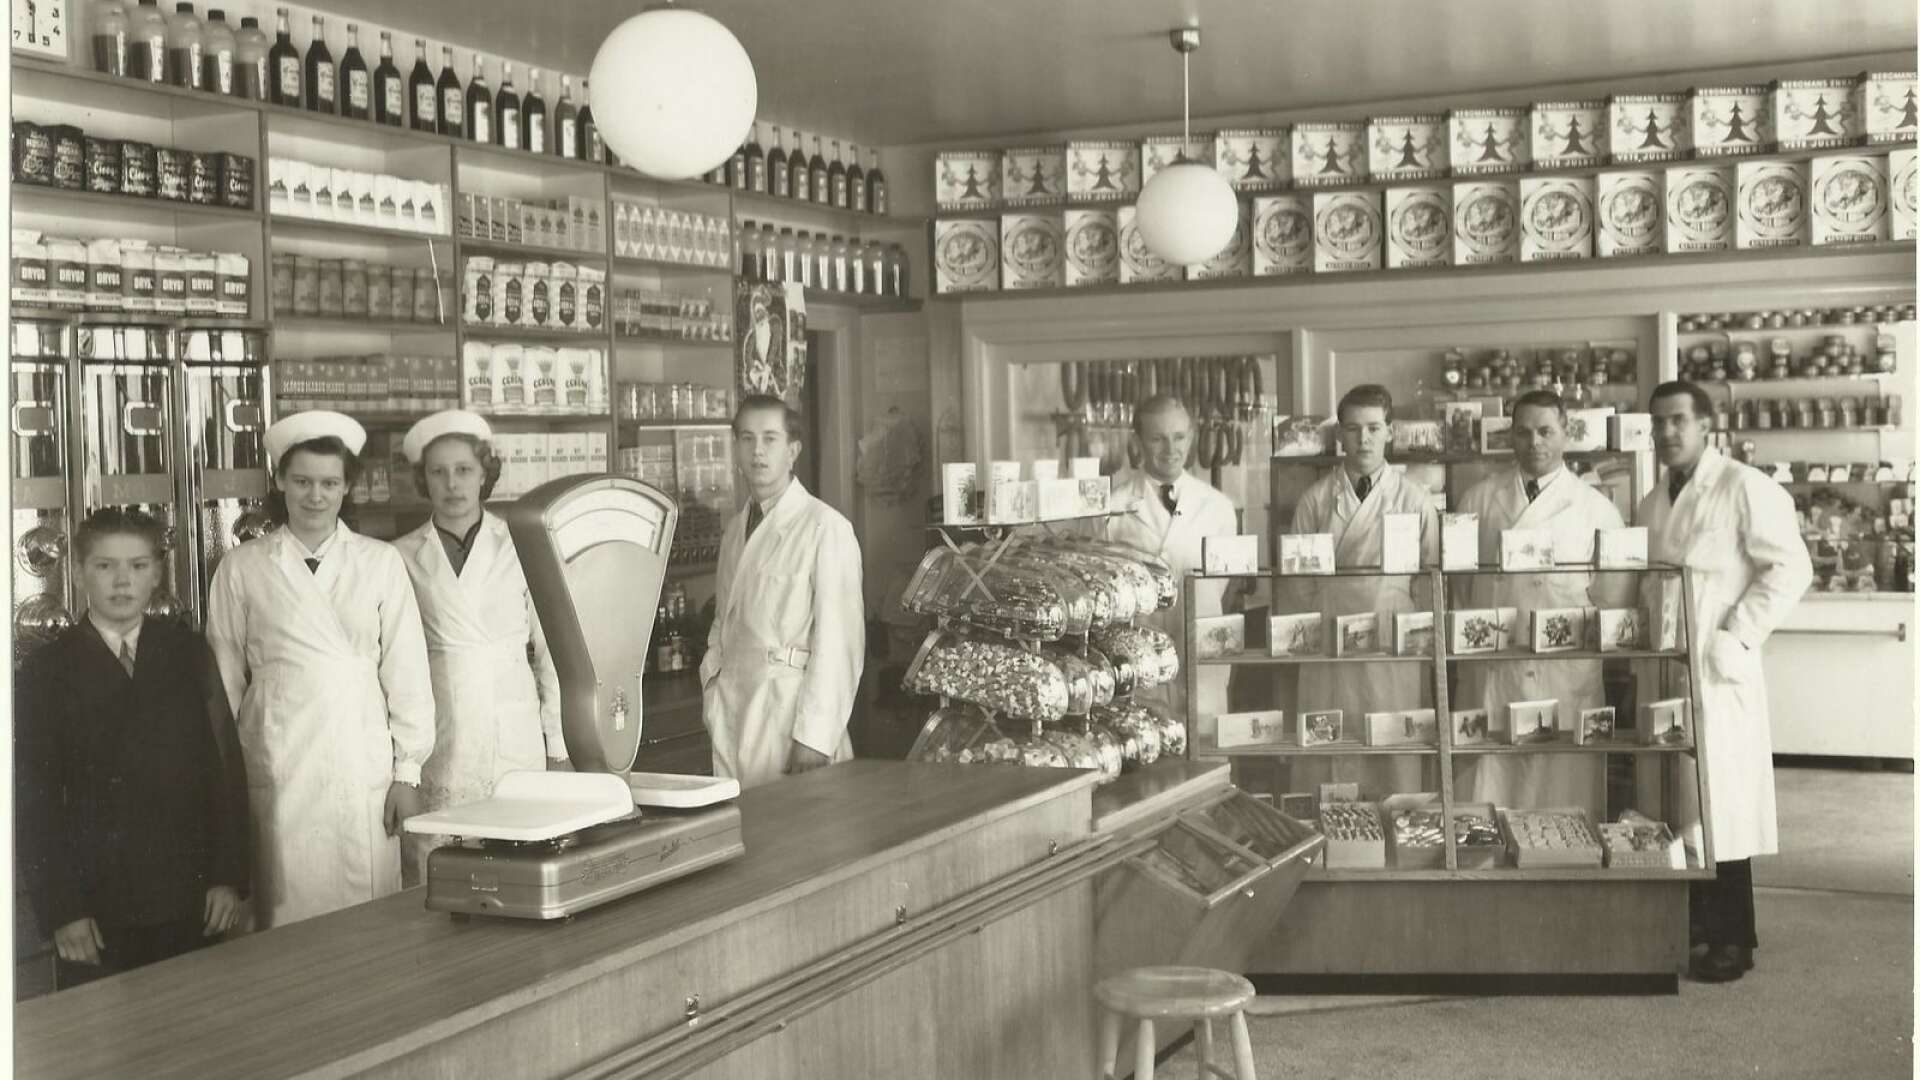 Carl Bergs affär låg på Hovlandavägen 38 och lades ner på 1970-talet. Fotot är troligen från 1940-talet.